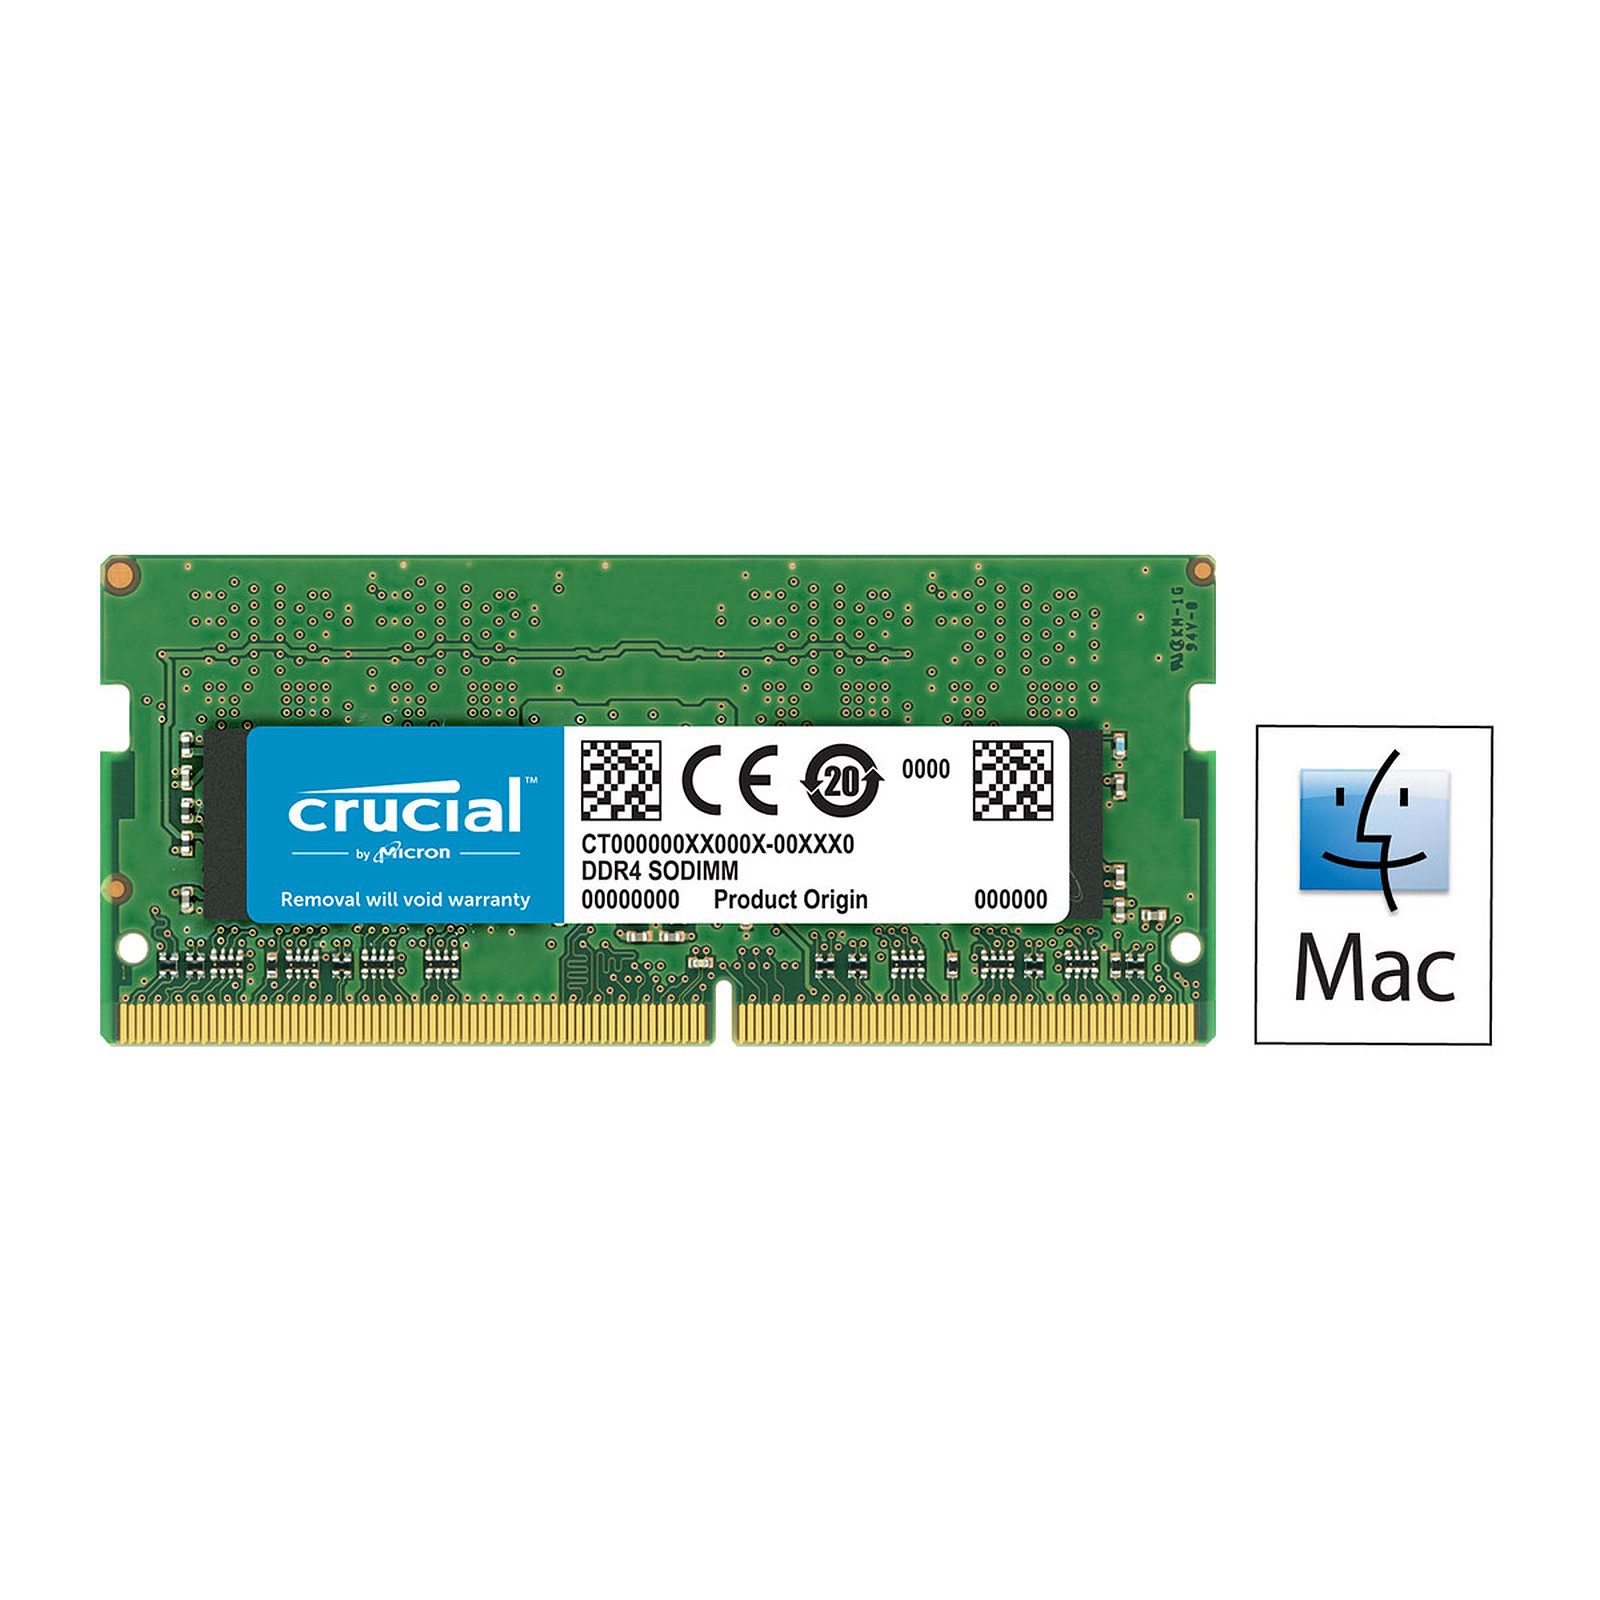 Mmoire So-Dimm Crucial DDR4 16Go PC19200 2400MHz CL17 pour Mac et PC, informatique Reunion 974, Futur Runion informatique